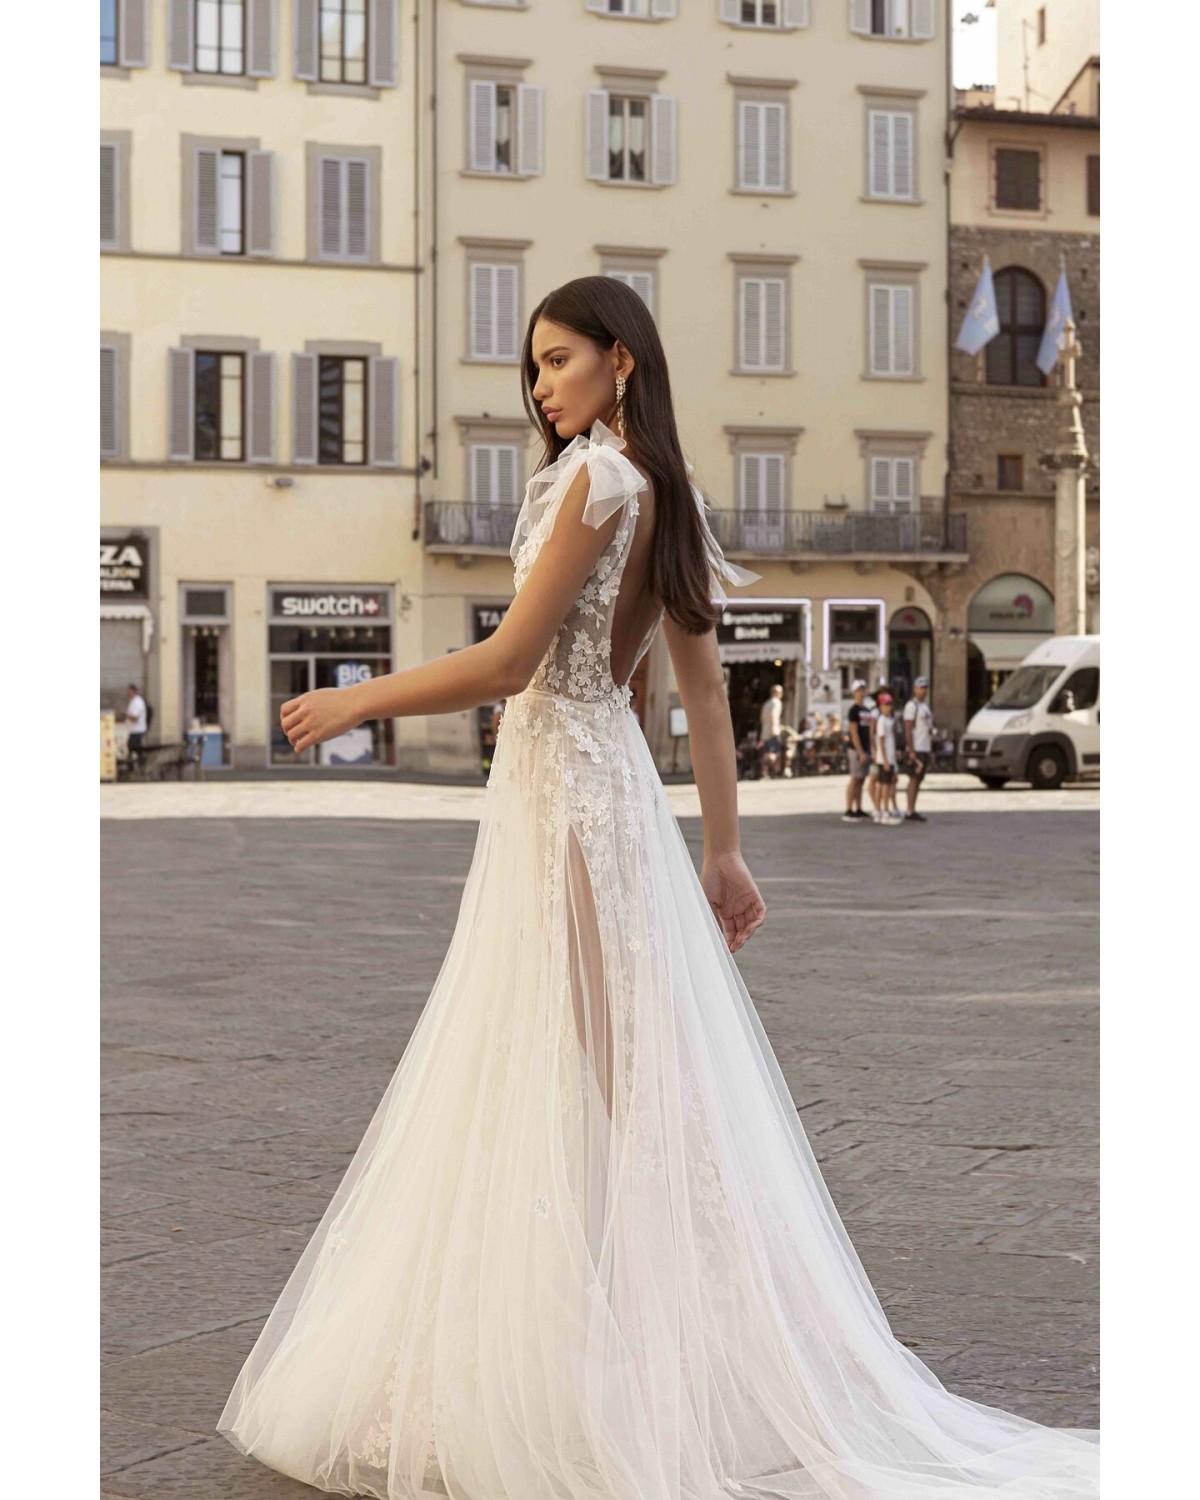 Felicity - abito da sposa collezione 2020 - Muse by Berta